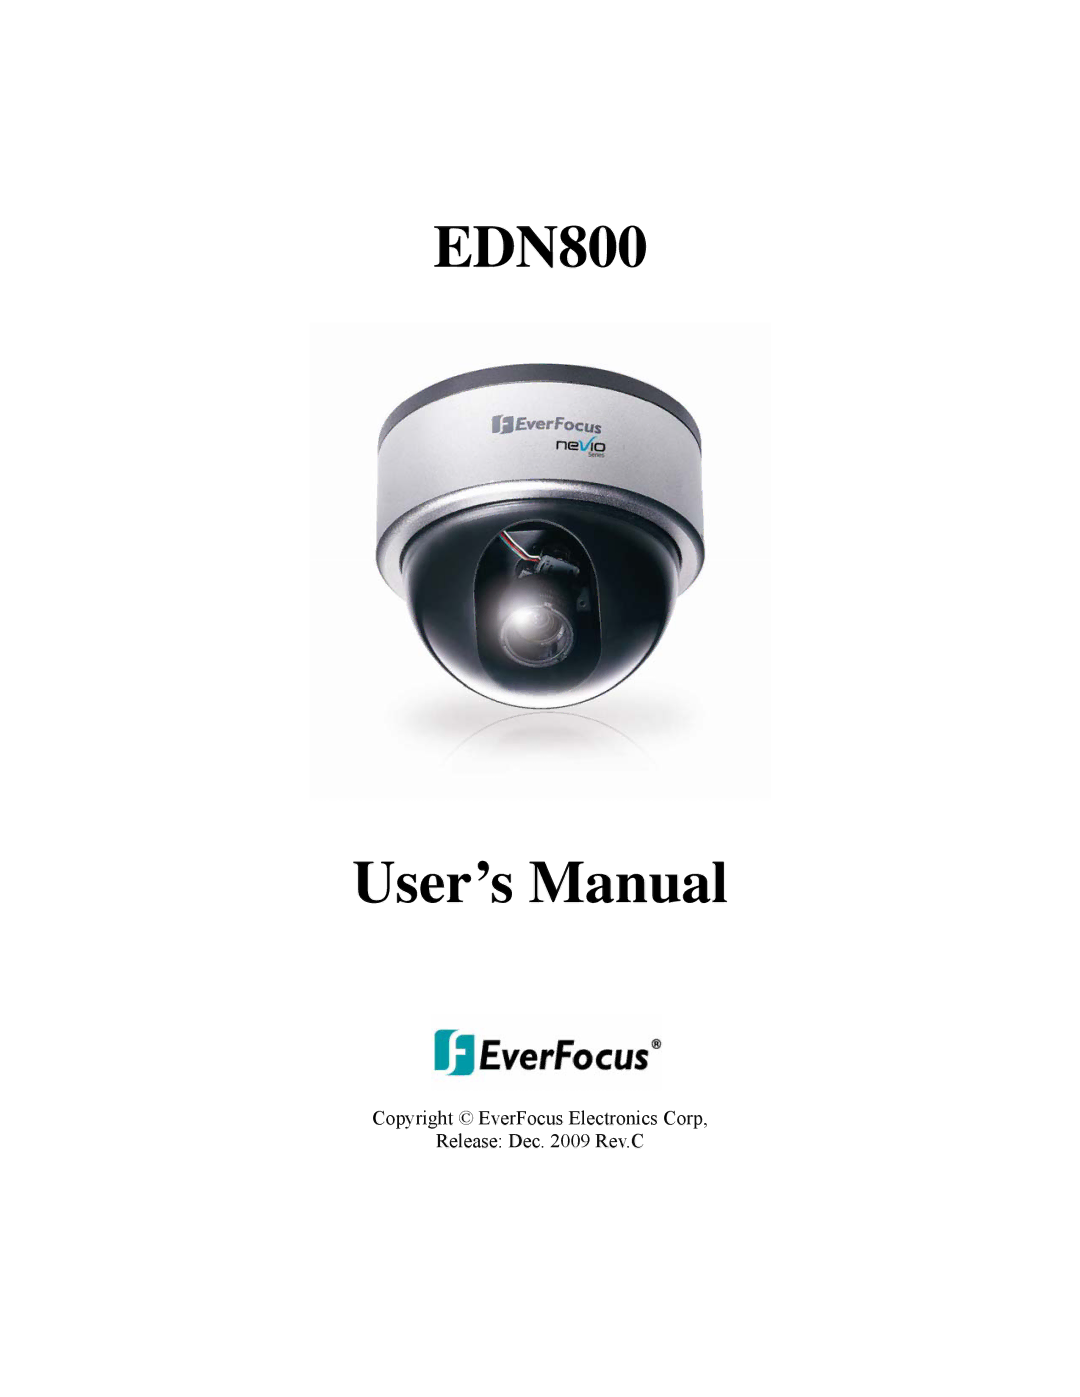 EverFocus user manual EDN800 User’s Manual 